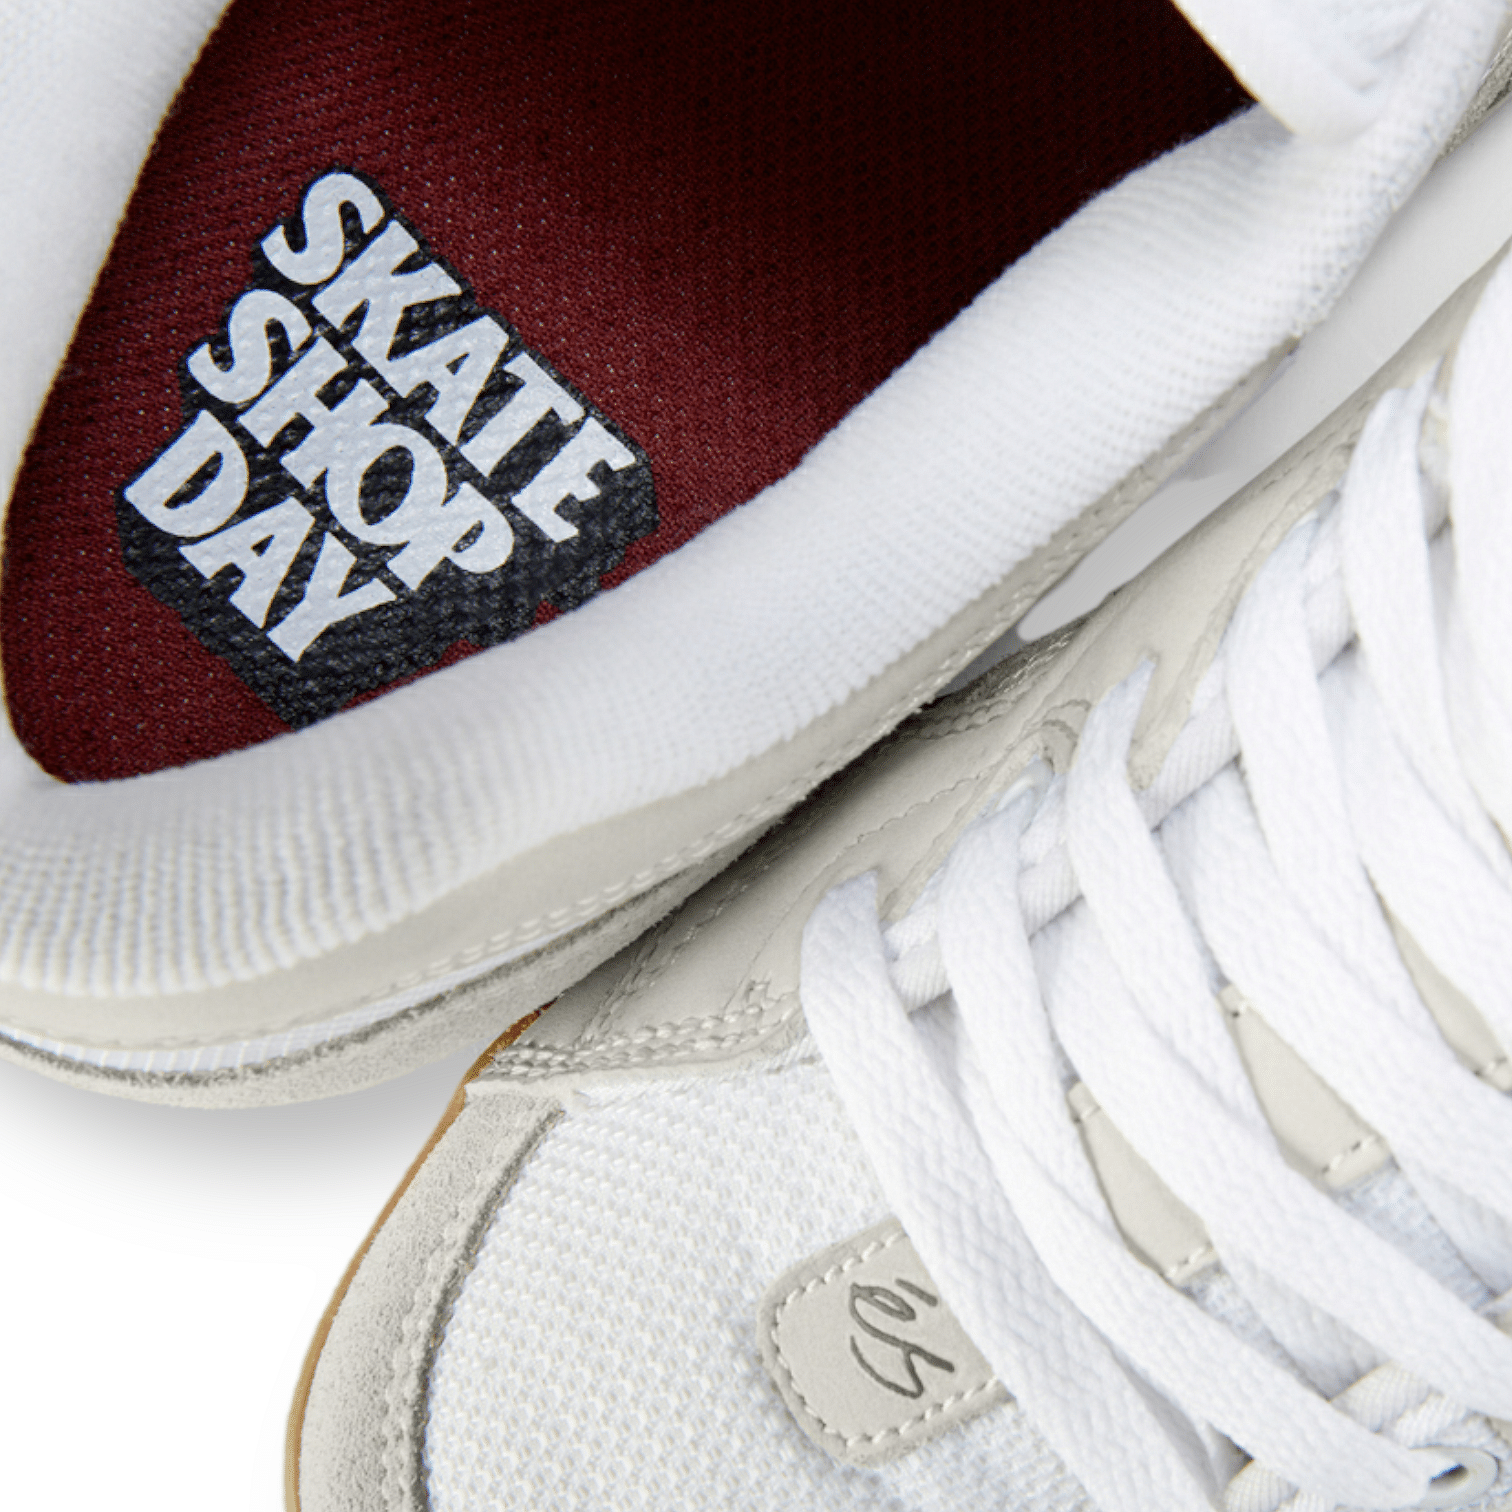 ES One Nine 7 Skate Inspired Sneakers Shoes